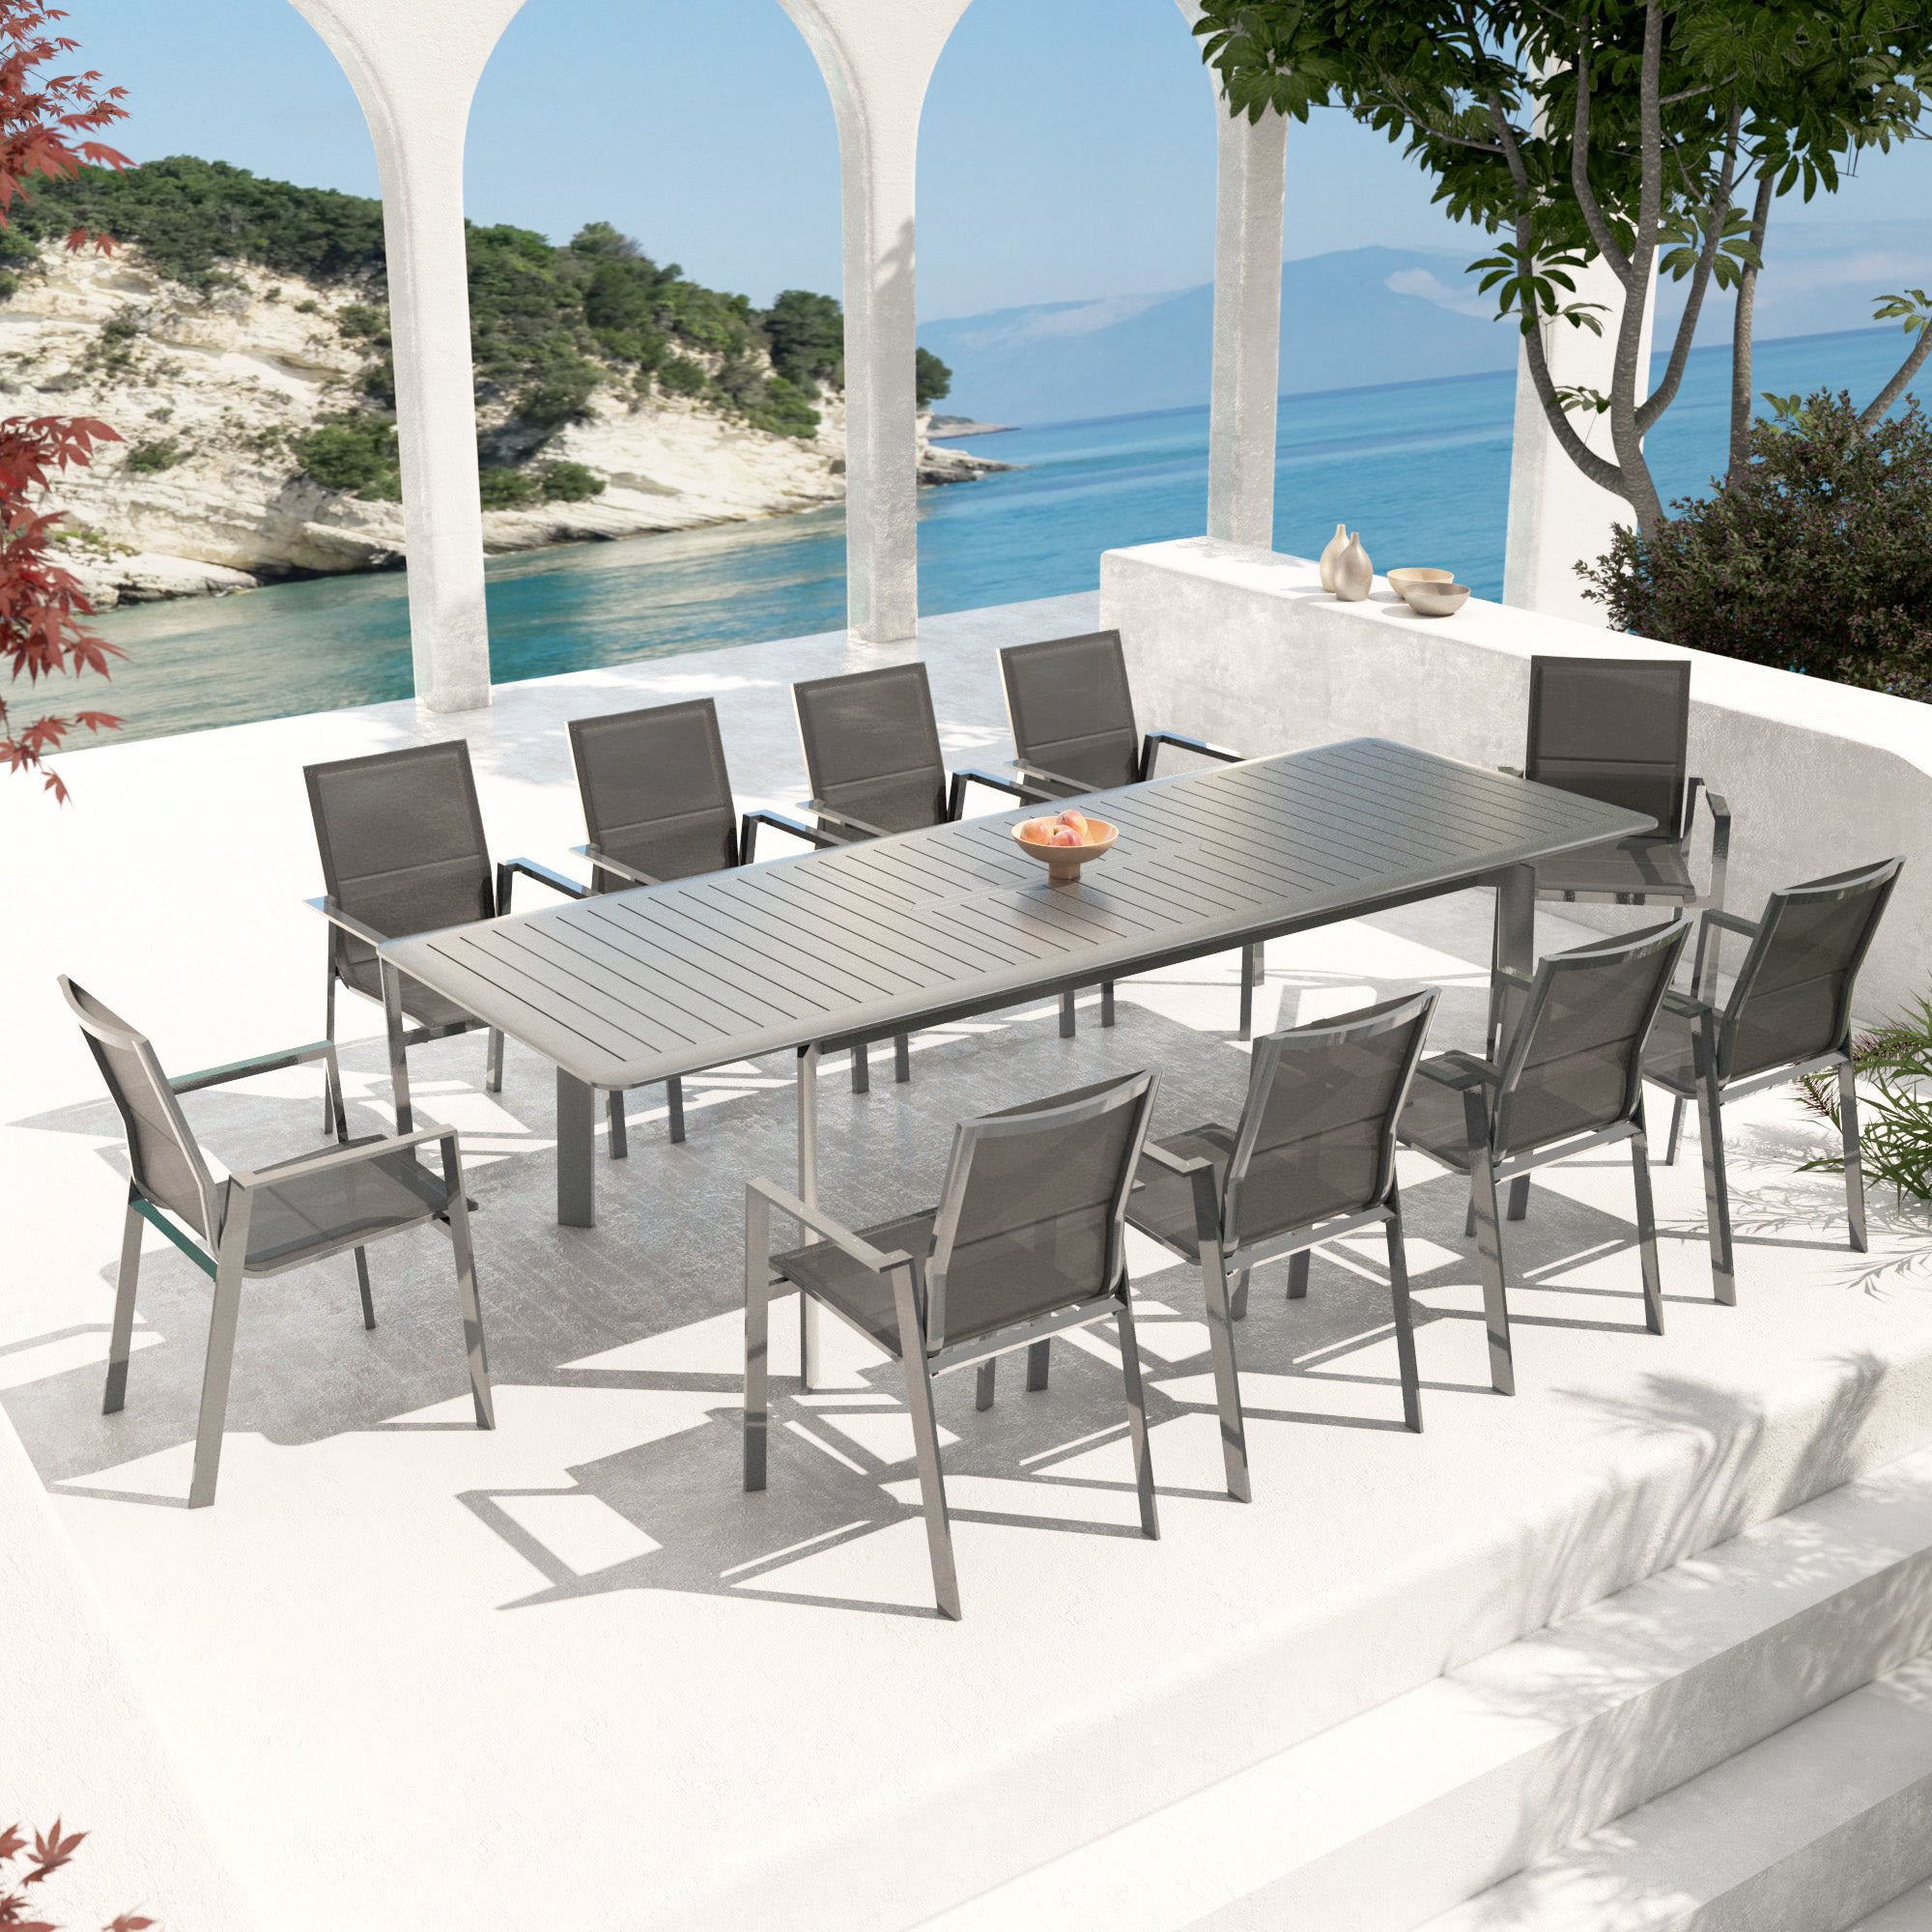 Portofino stackable garden armchair